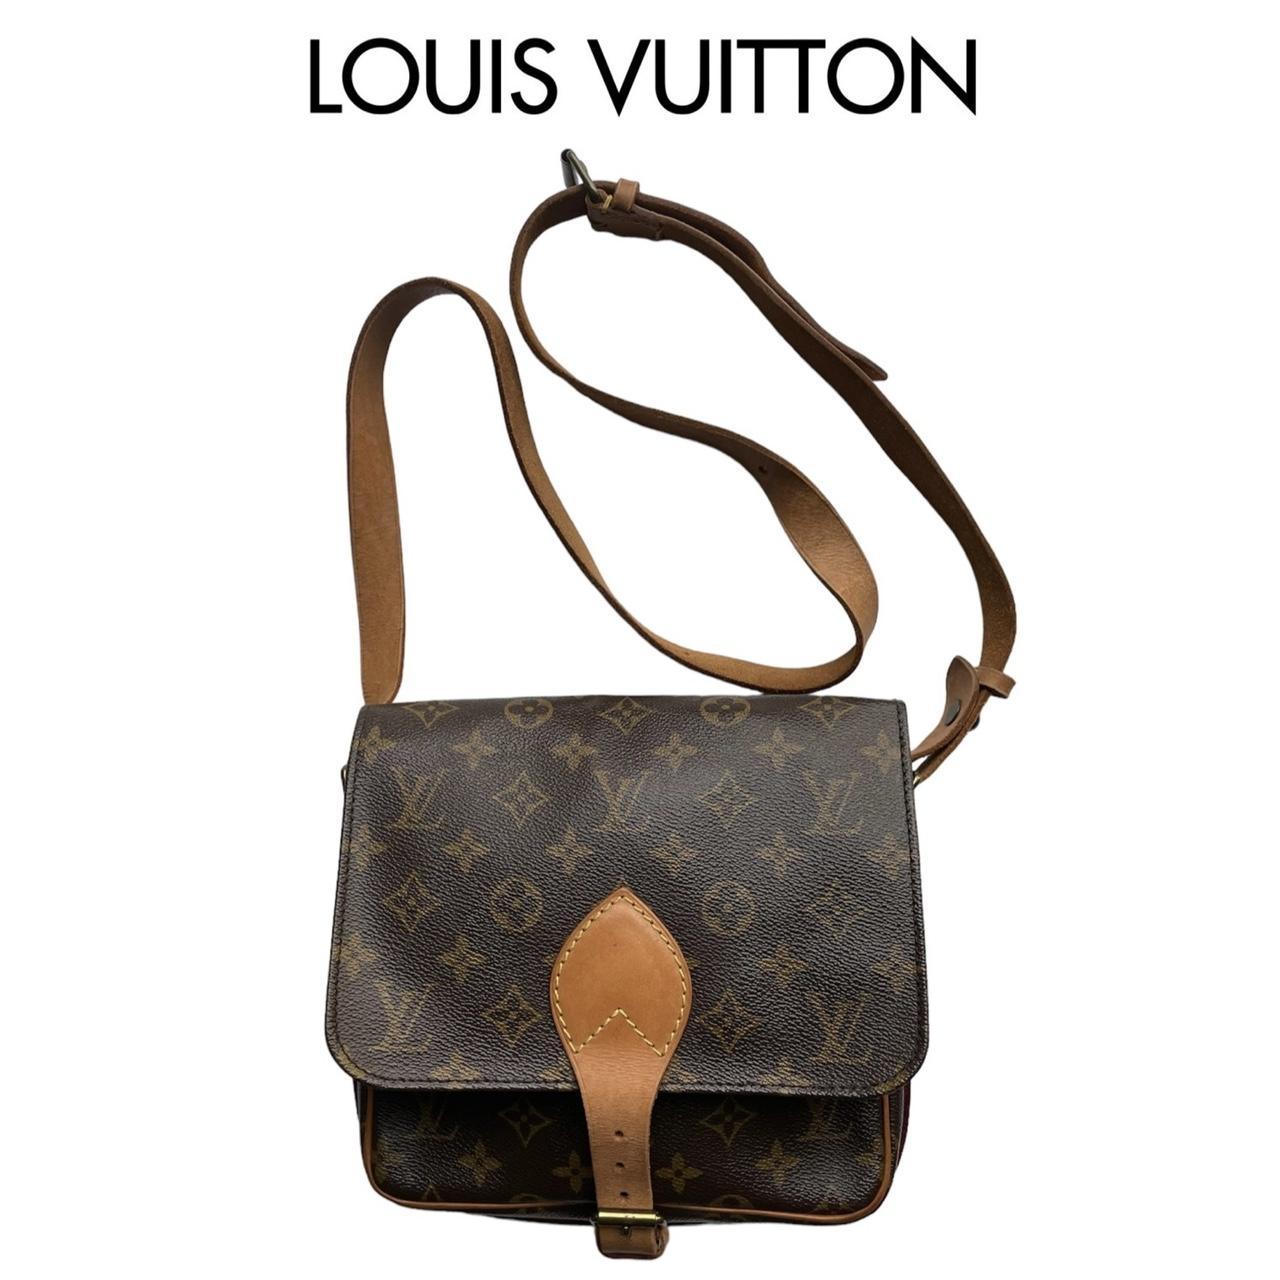 Authentic vintage Louis Vuitton men's bag - Depop